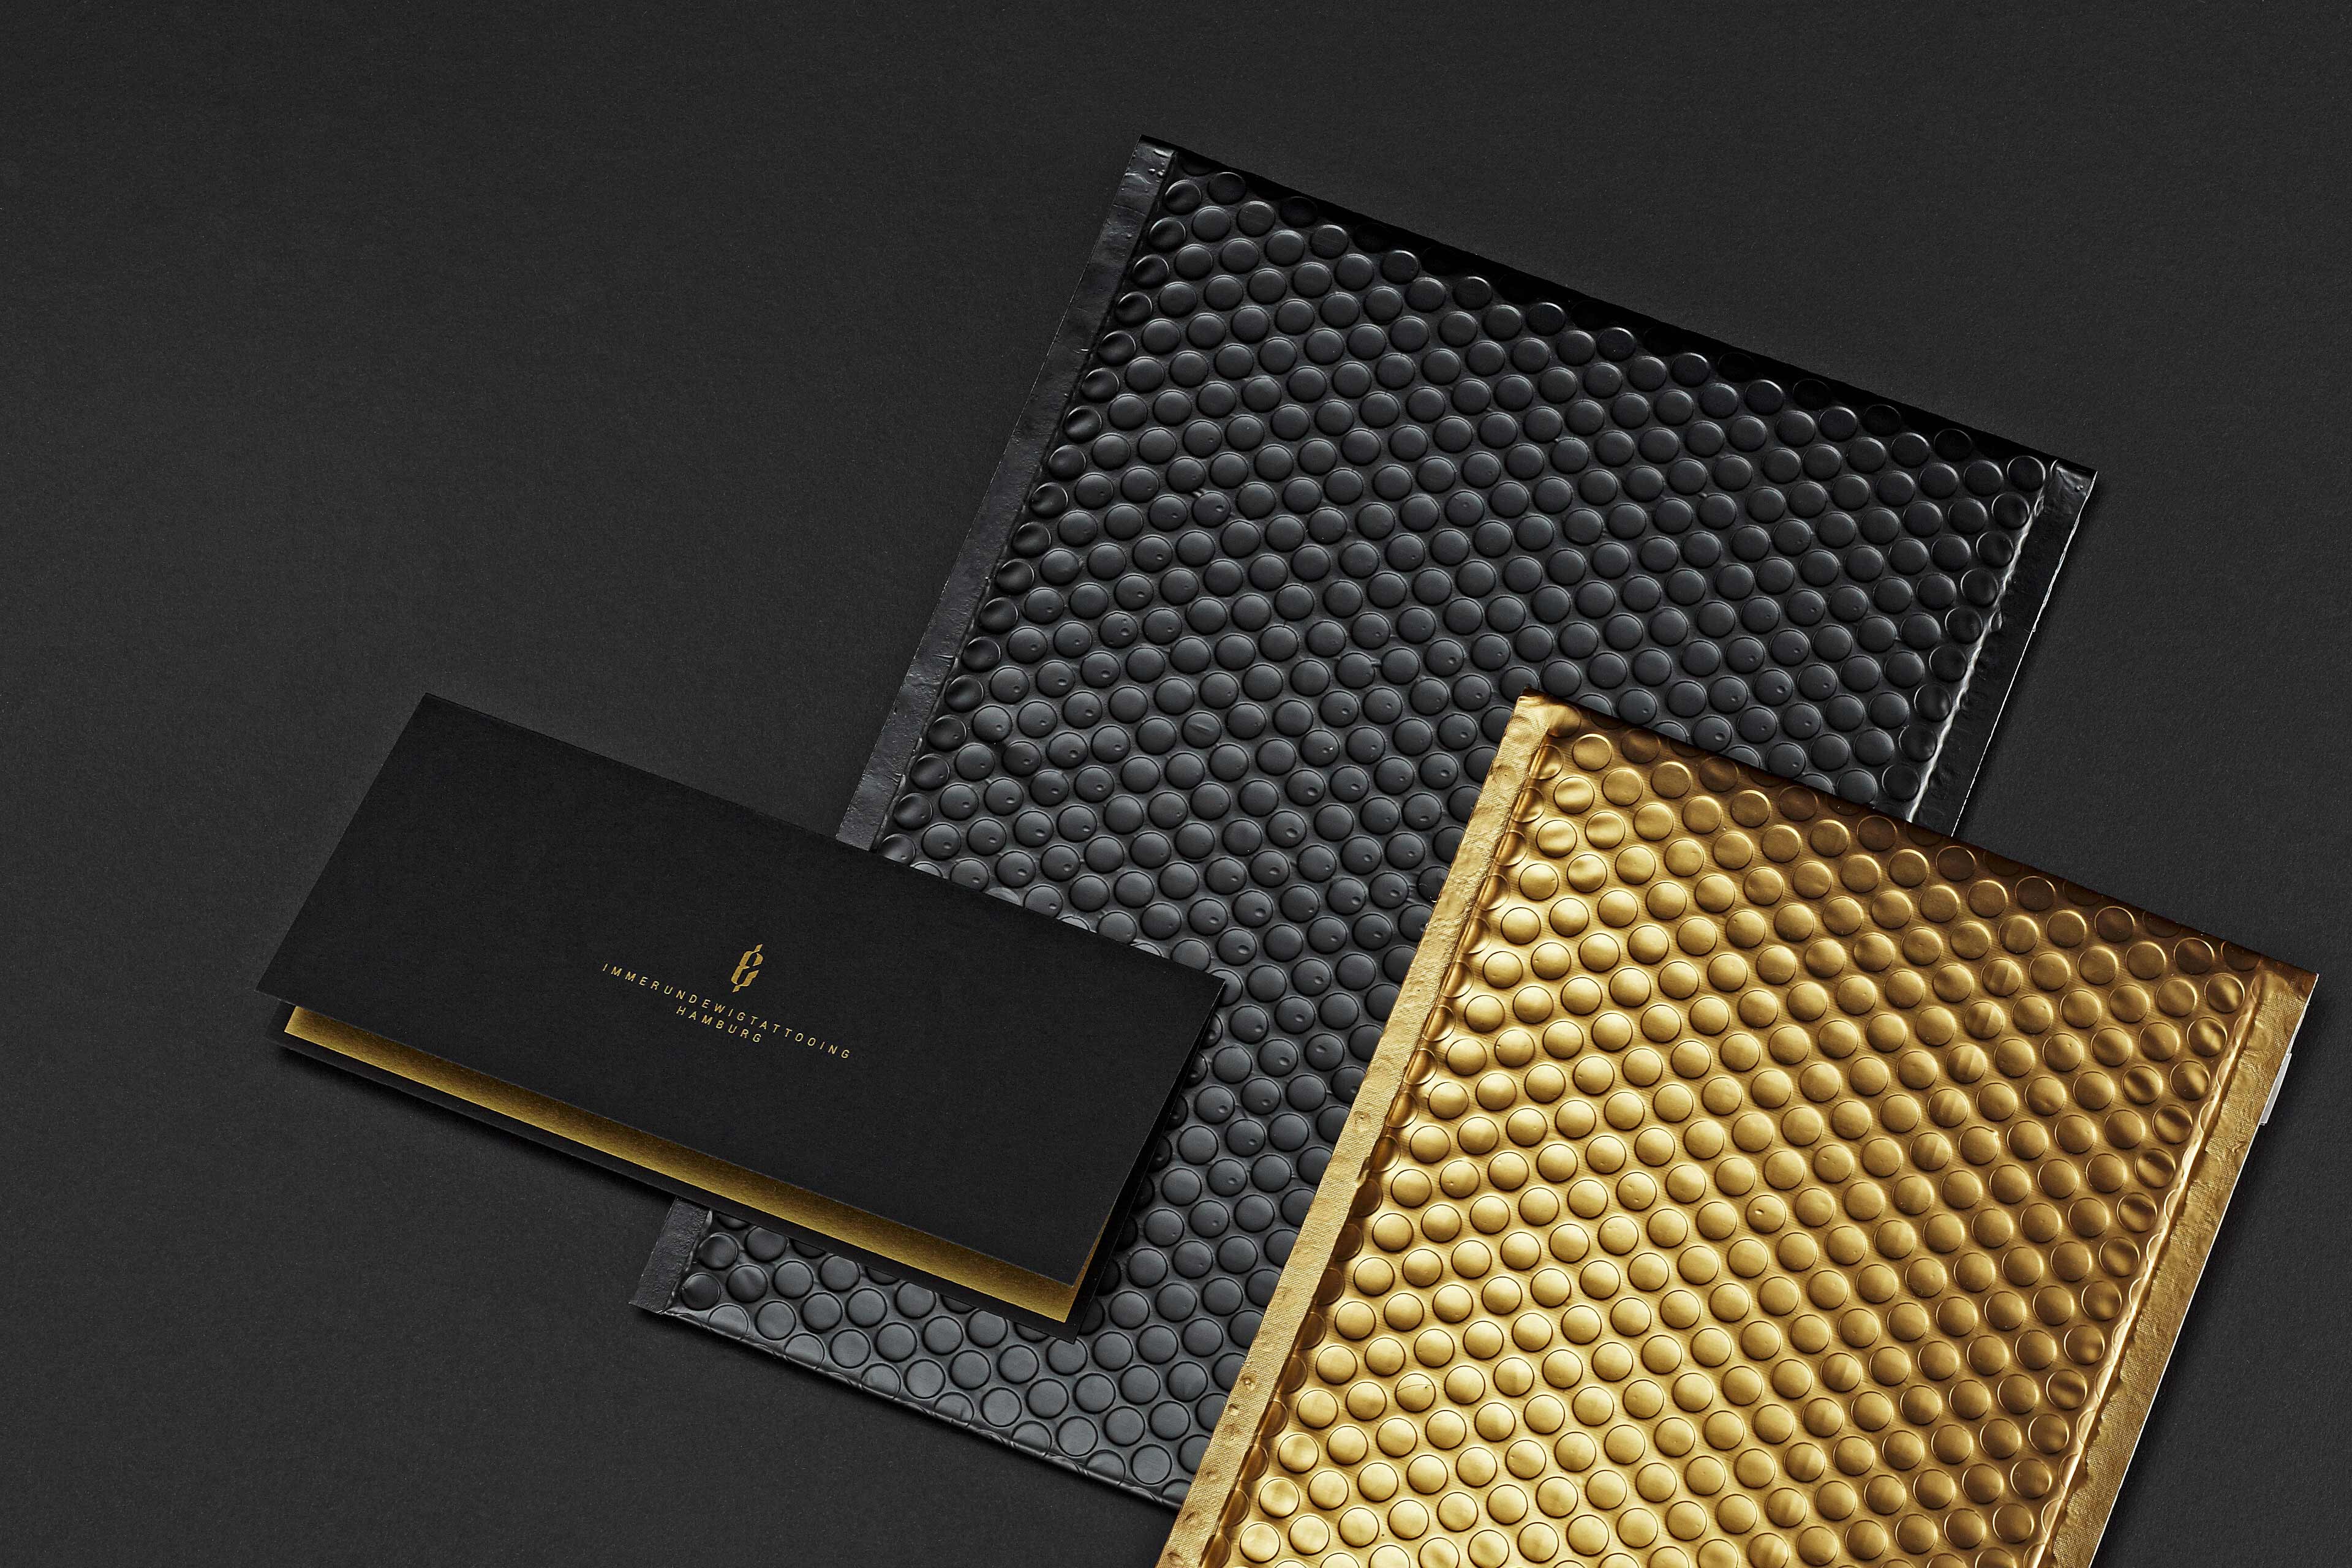 Schwarzen und goldene Luftpolsterfolien liegen auf einem schwarzen Karton.